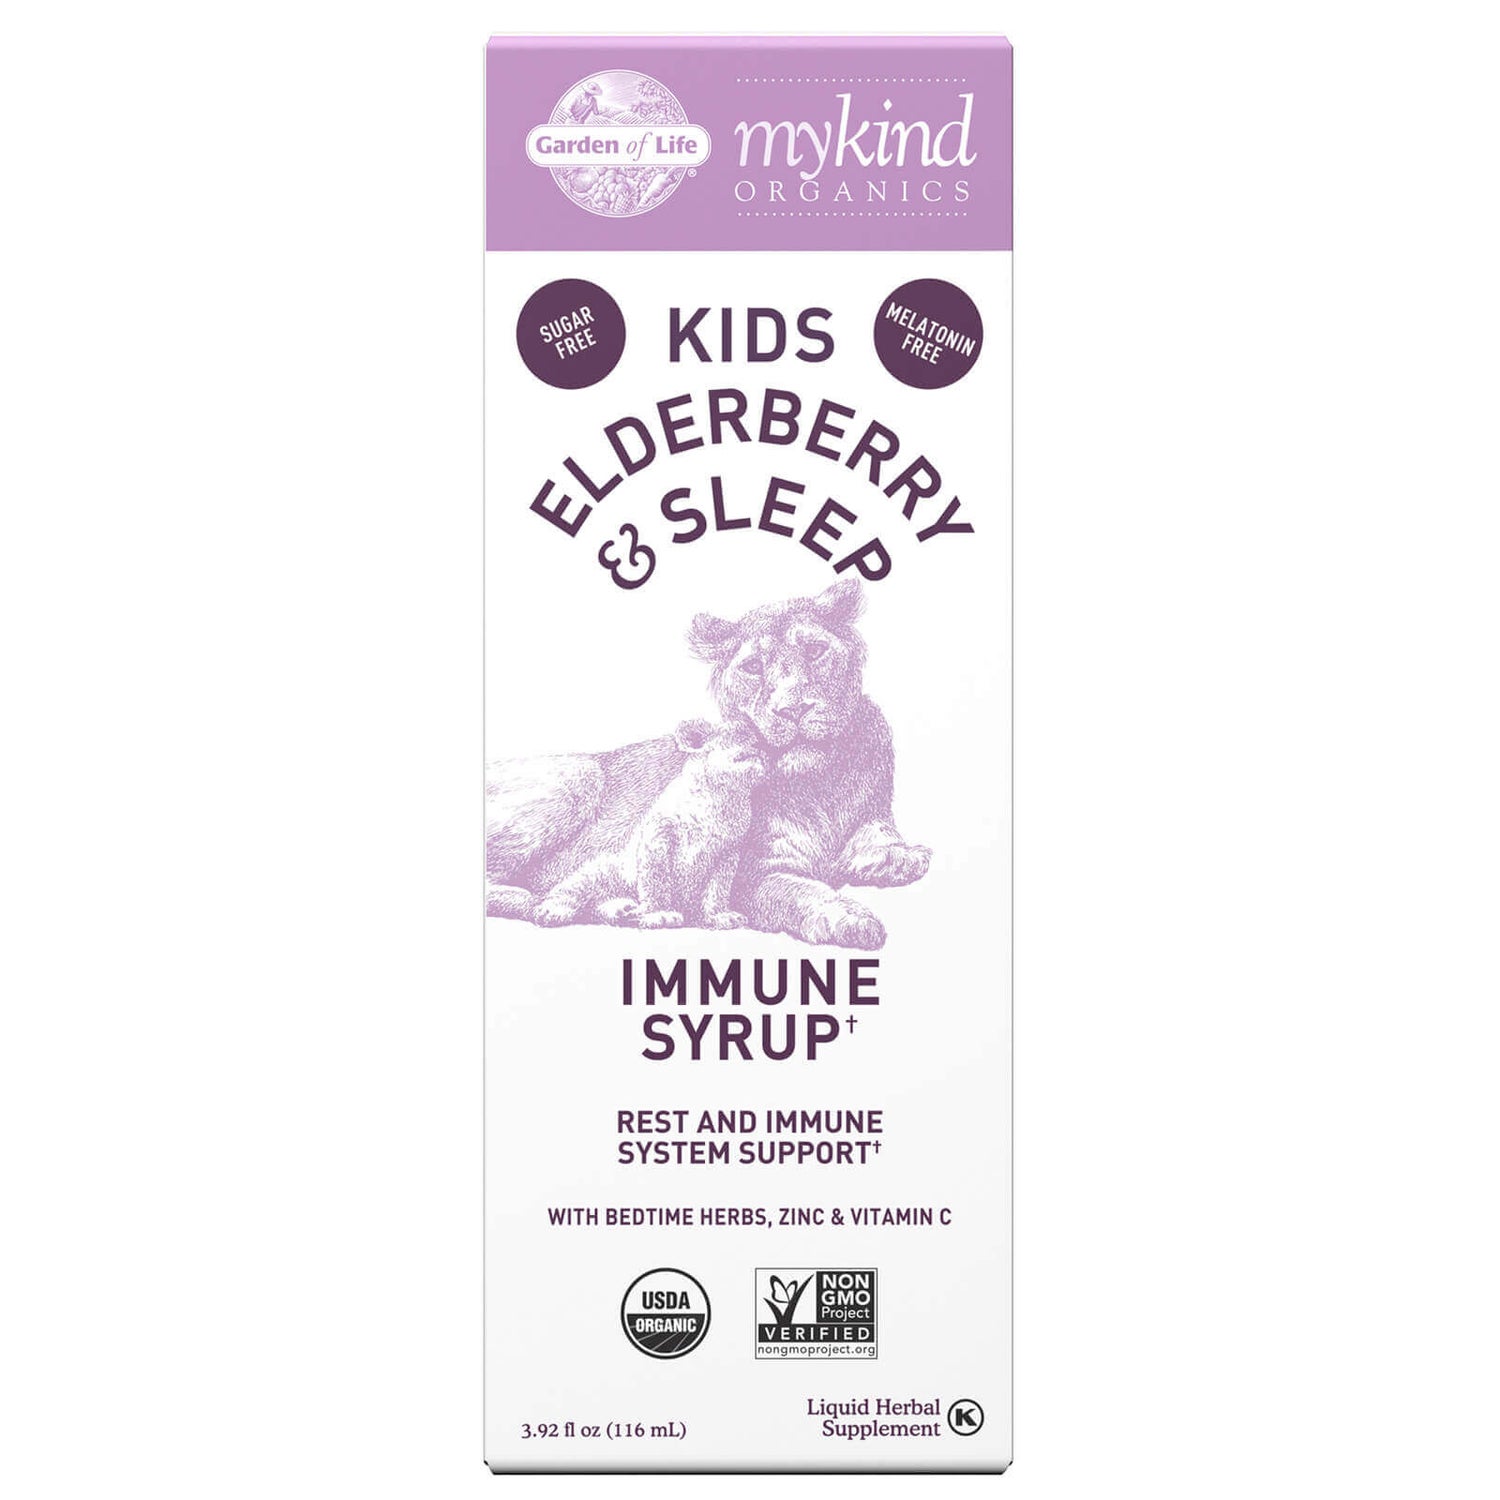 Mykind Organics Kinderen Vlierbessen & Slaap Immuunsiroop - 116 ml